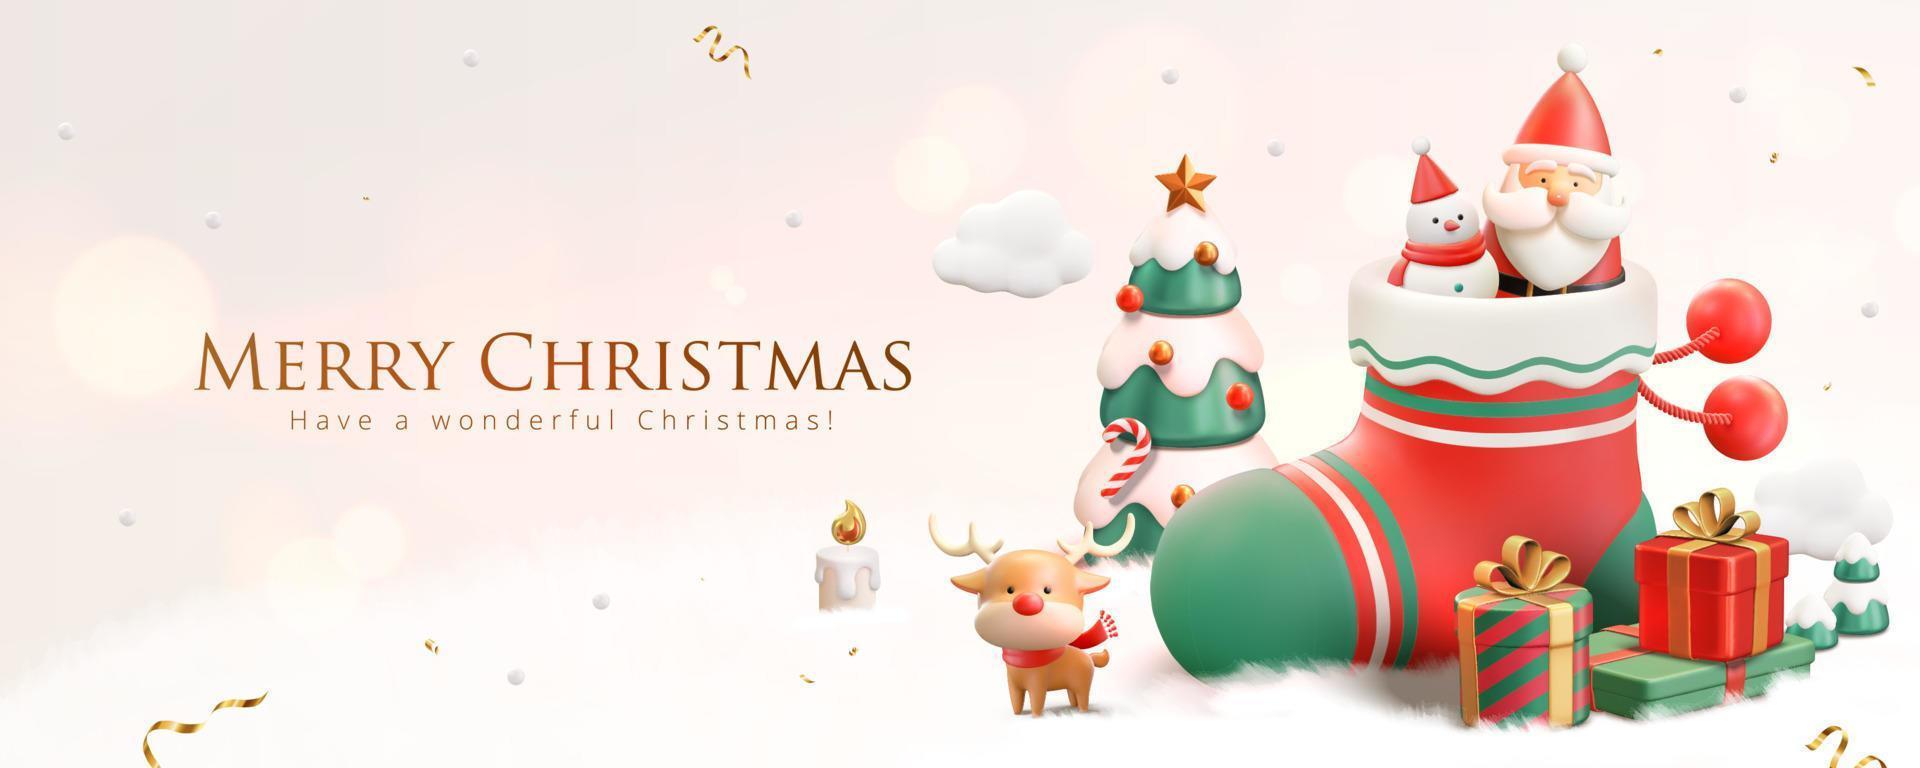 Banner de natal 3d com boneco de neve e papai noel na meia com enfeites festivos de natal em um fundo branco nevado vetor